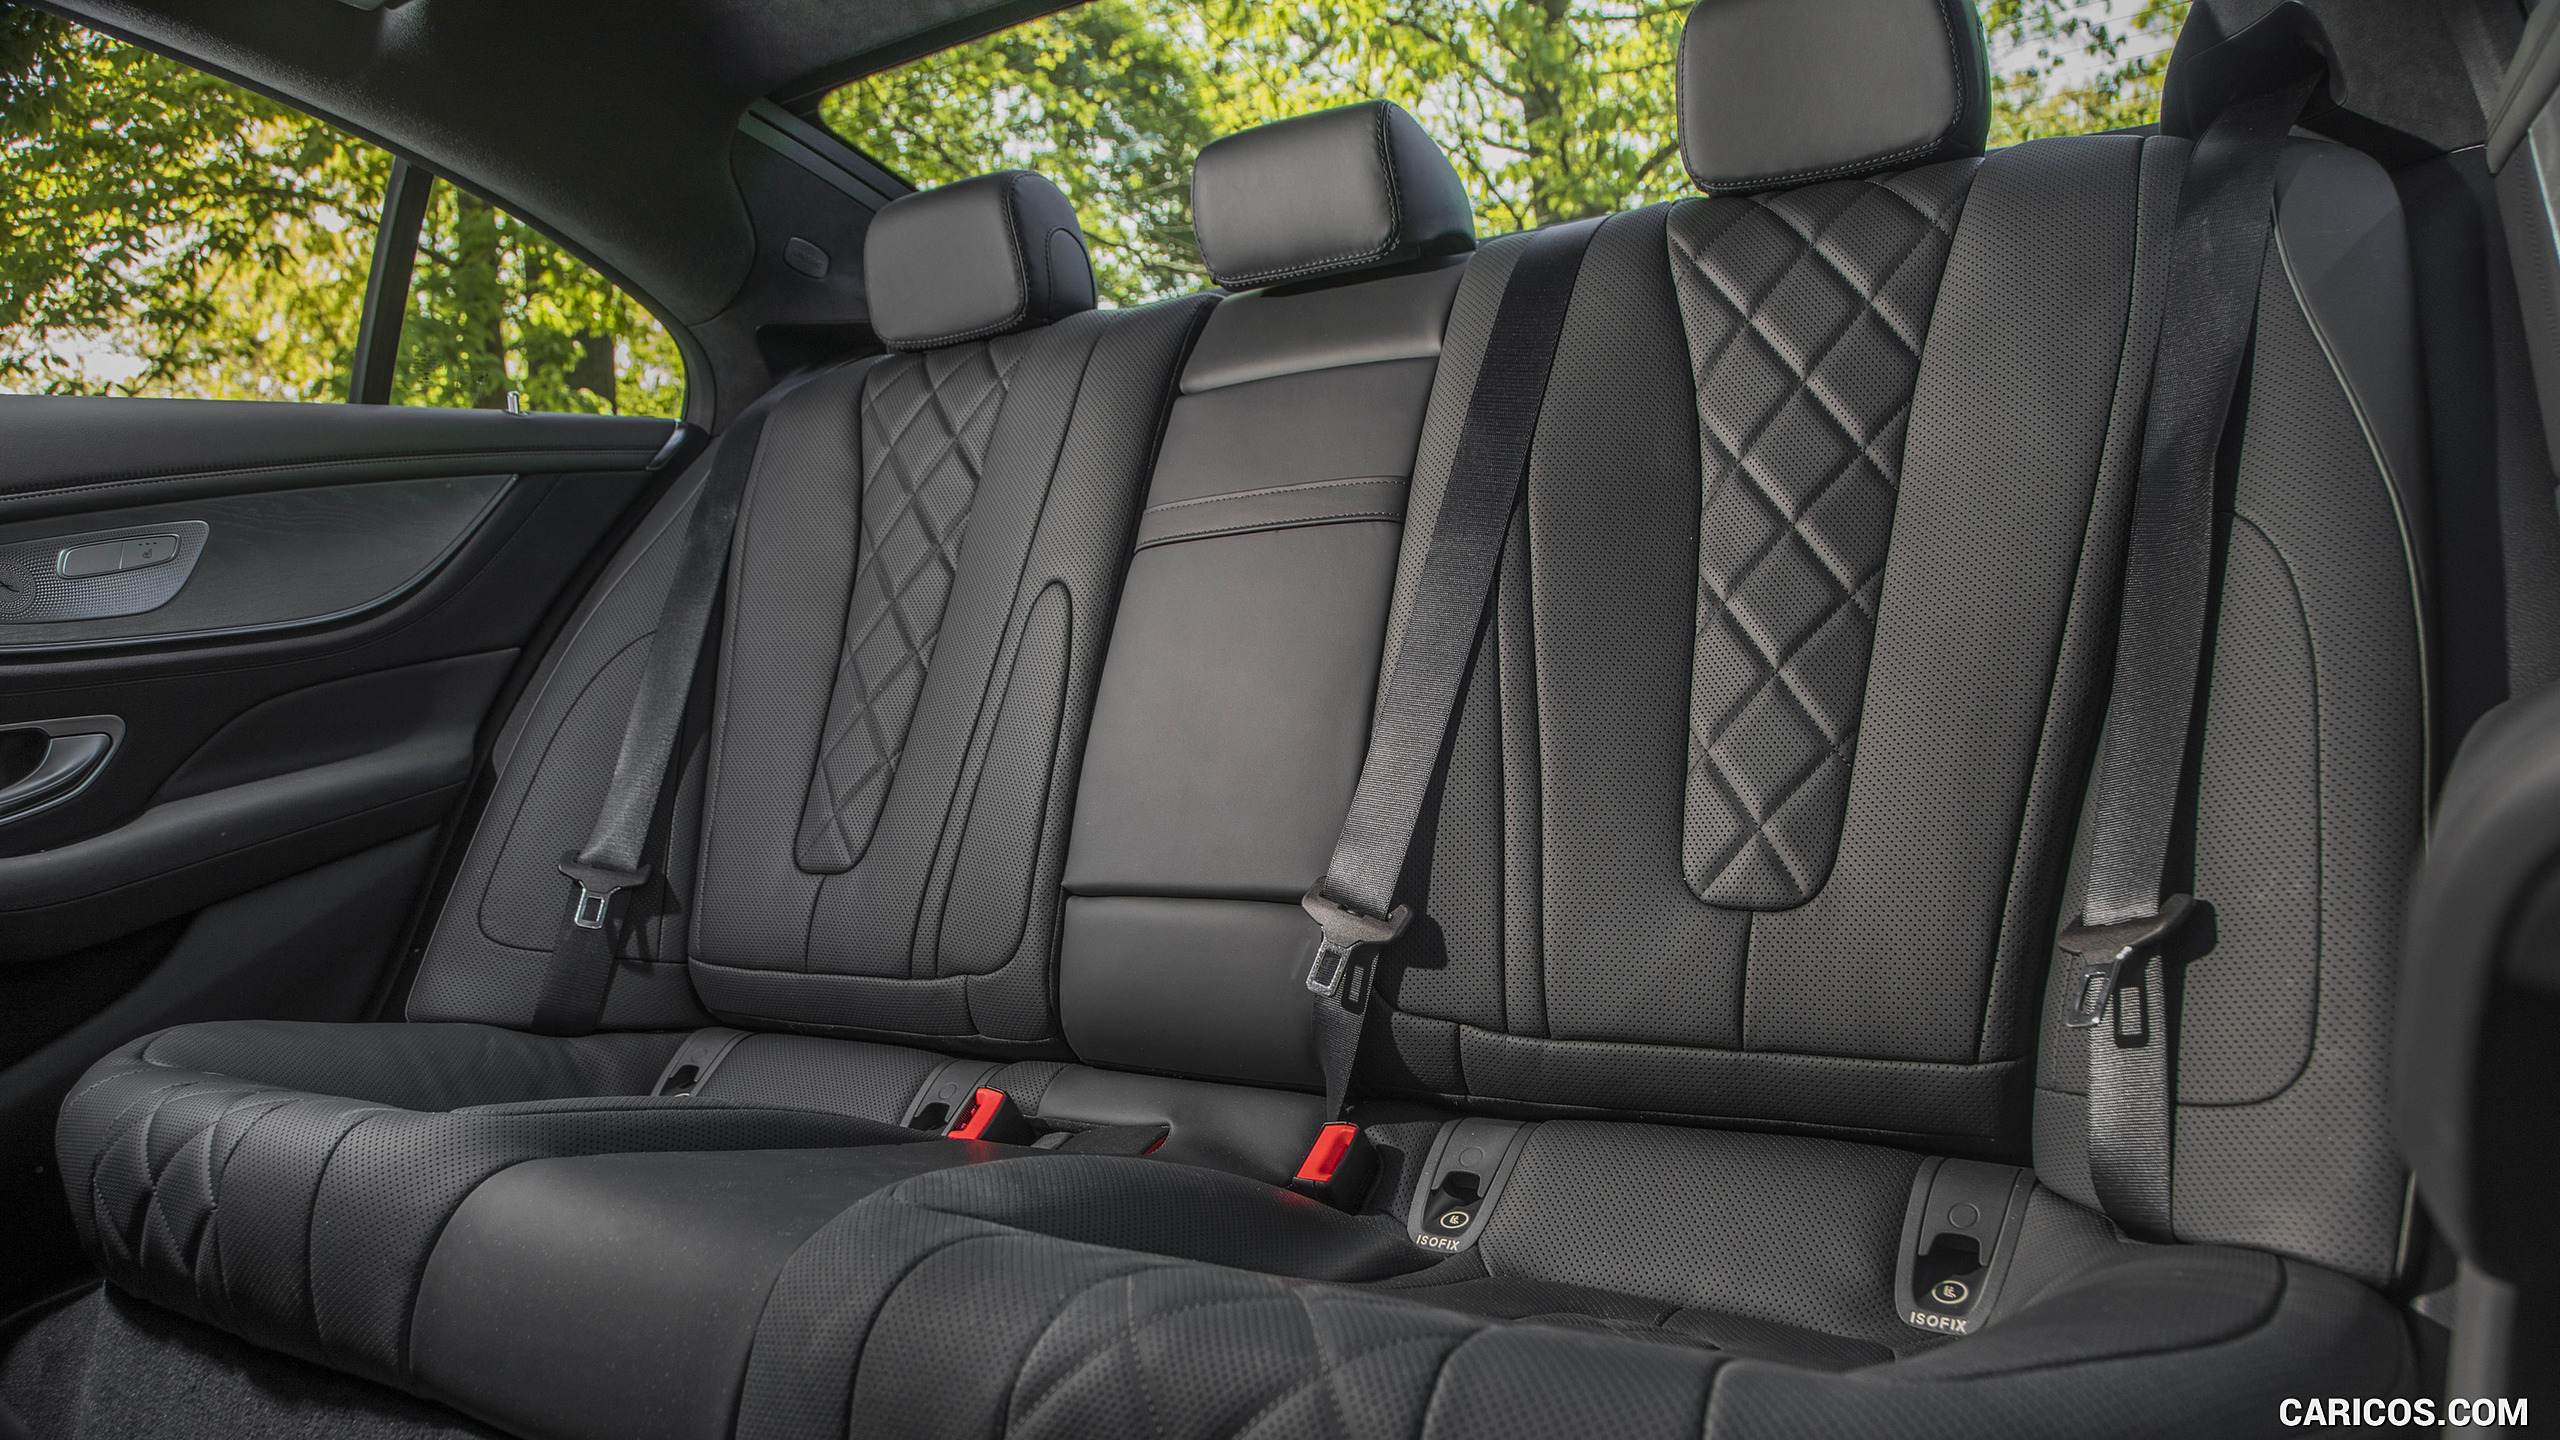 2019 Mercedes-Benz CLS 450 4MATIC (US-Spec) - Interior, Rear Seats, #215 of 231